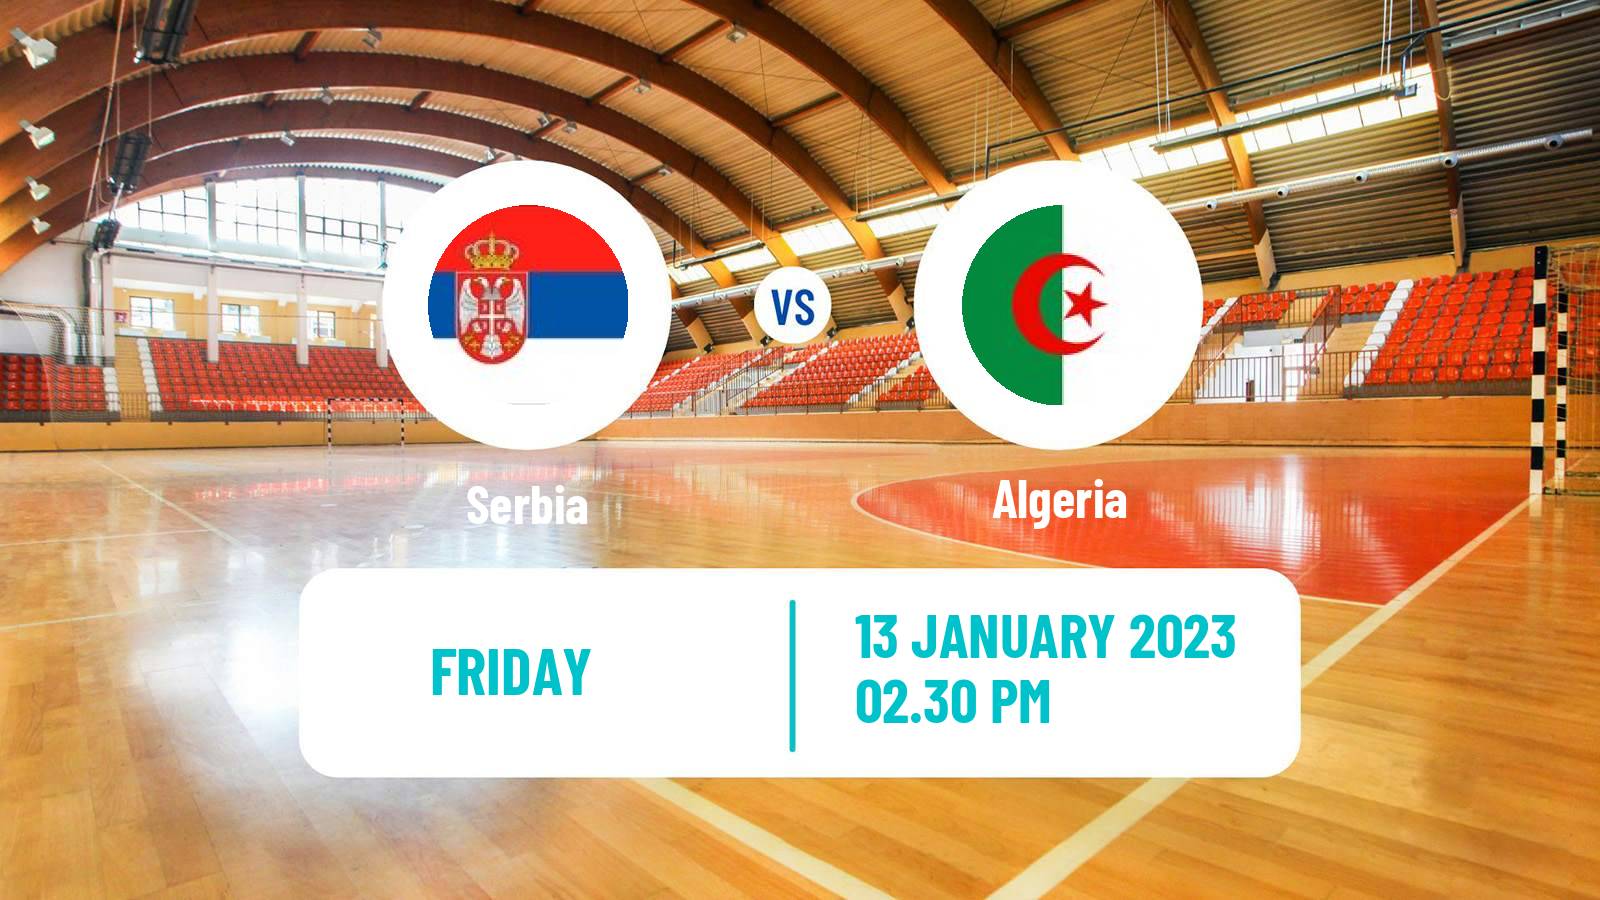 Handball Handball World Championship Serbia - Algeria